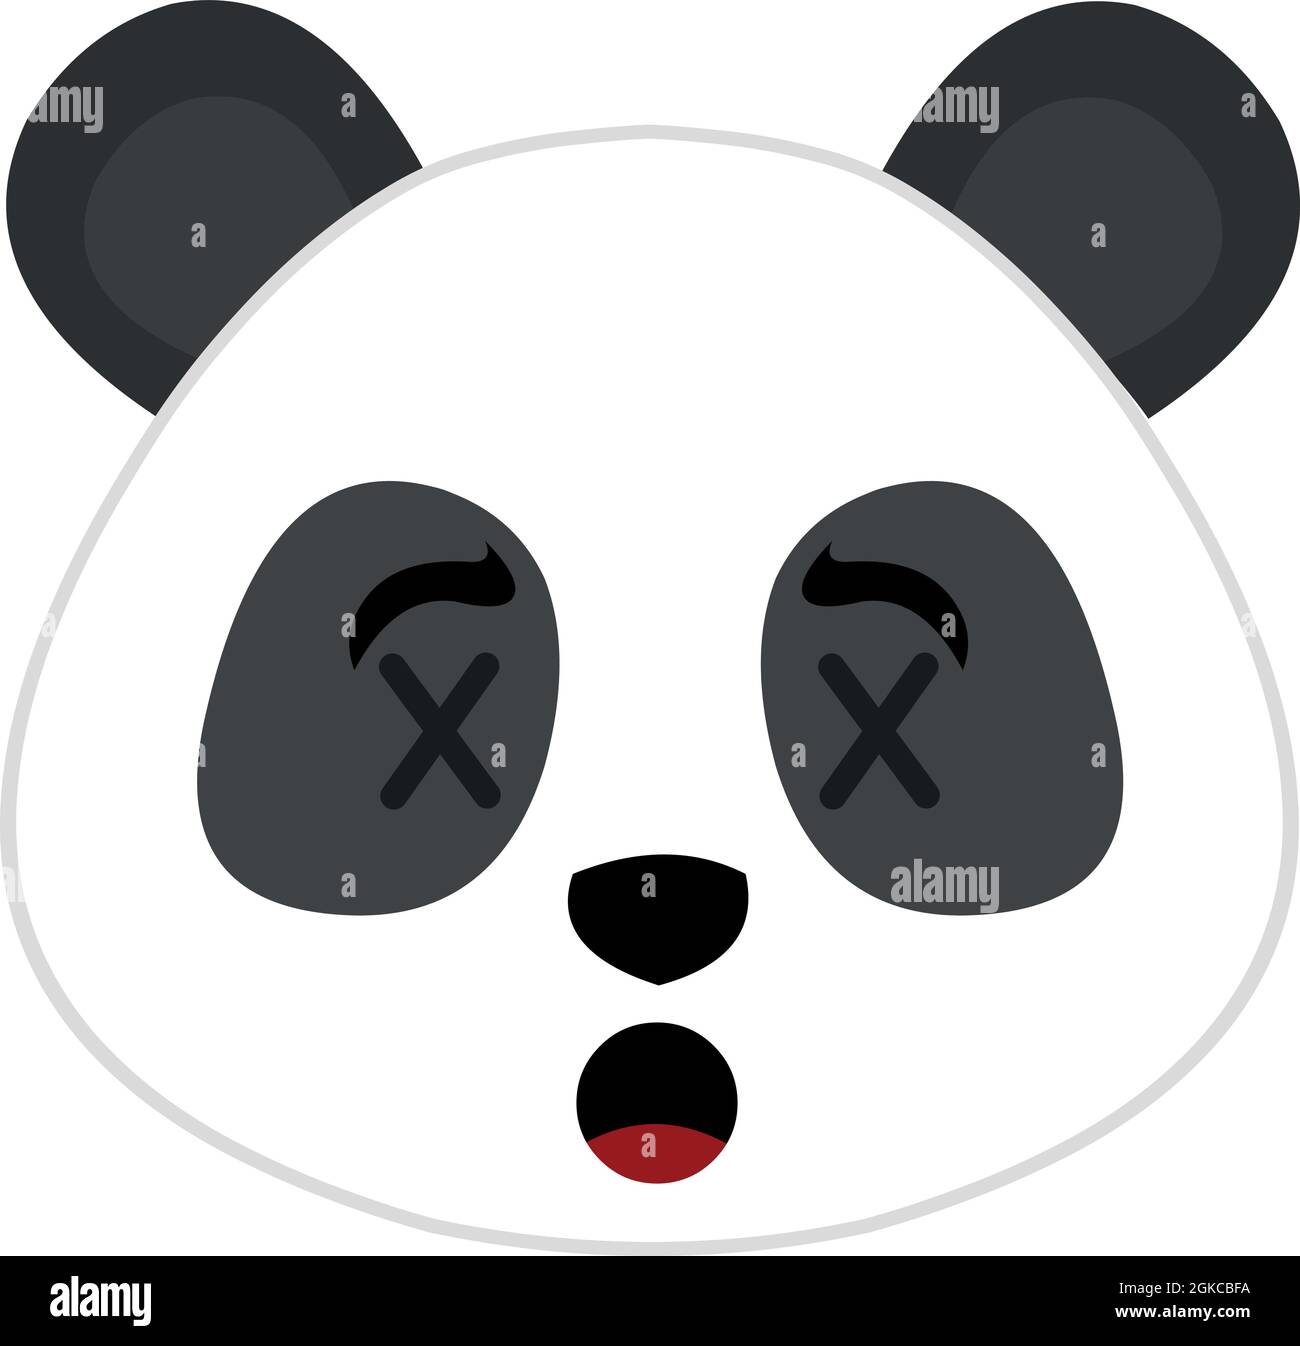 Vecteur émoticône illustration de la tête d'un ours panda avec les yeux en forme de croix, concept de mort Illustration de Vecteur